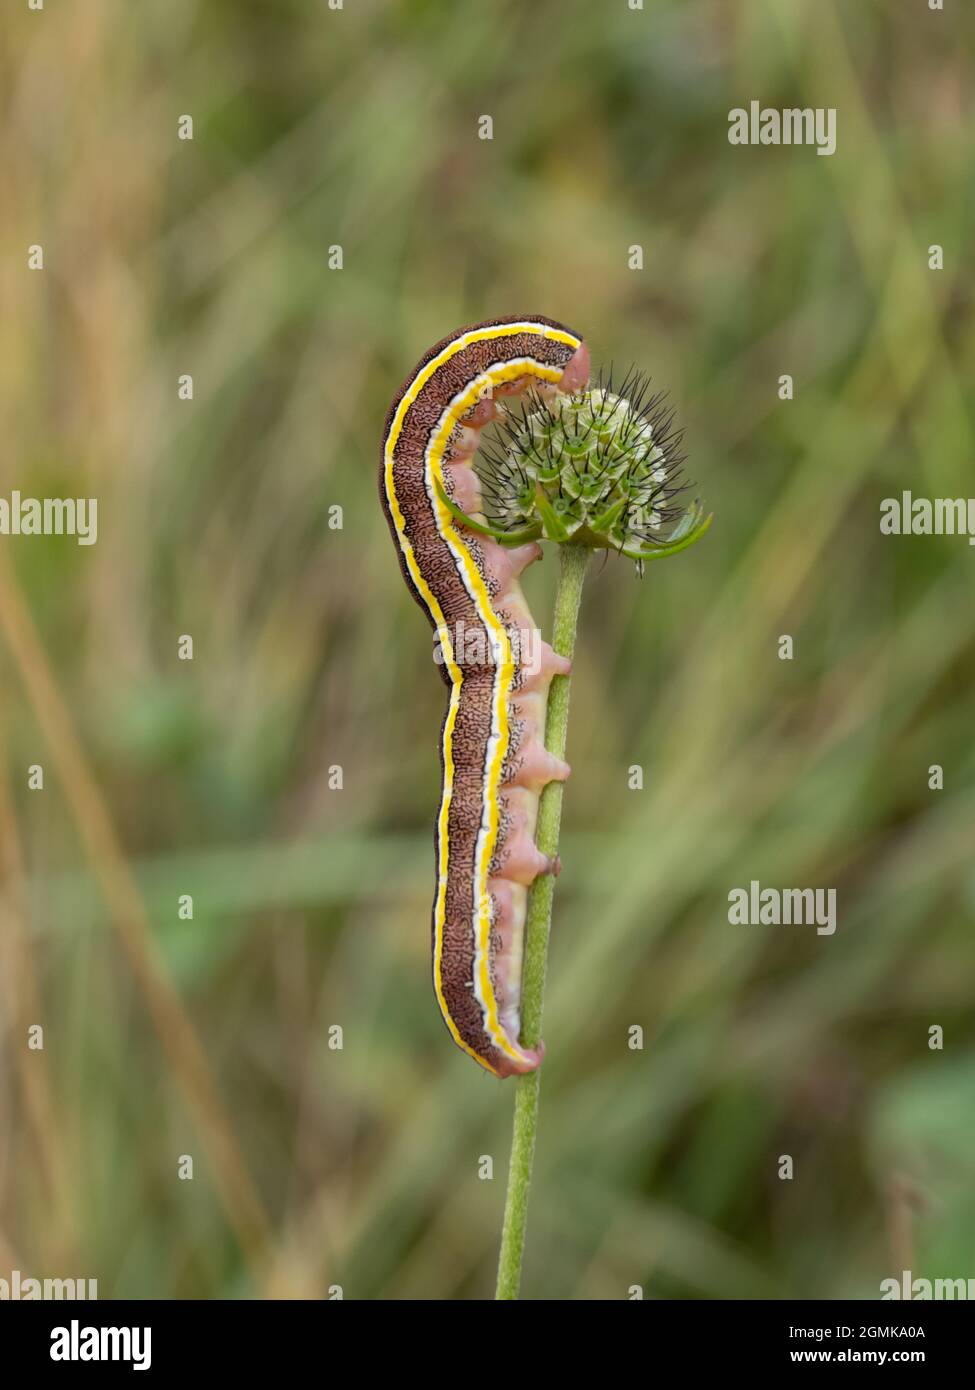 La chenille ou les larves d'un Moth de Broom, Ceramica pisi, se nourrissant sur une tige de plante. Banque D'Images